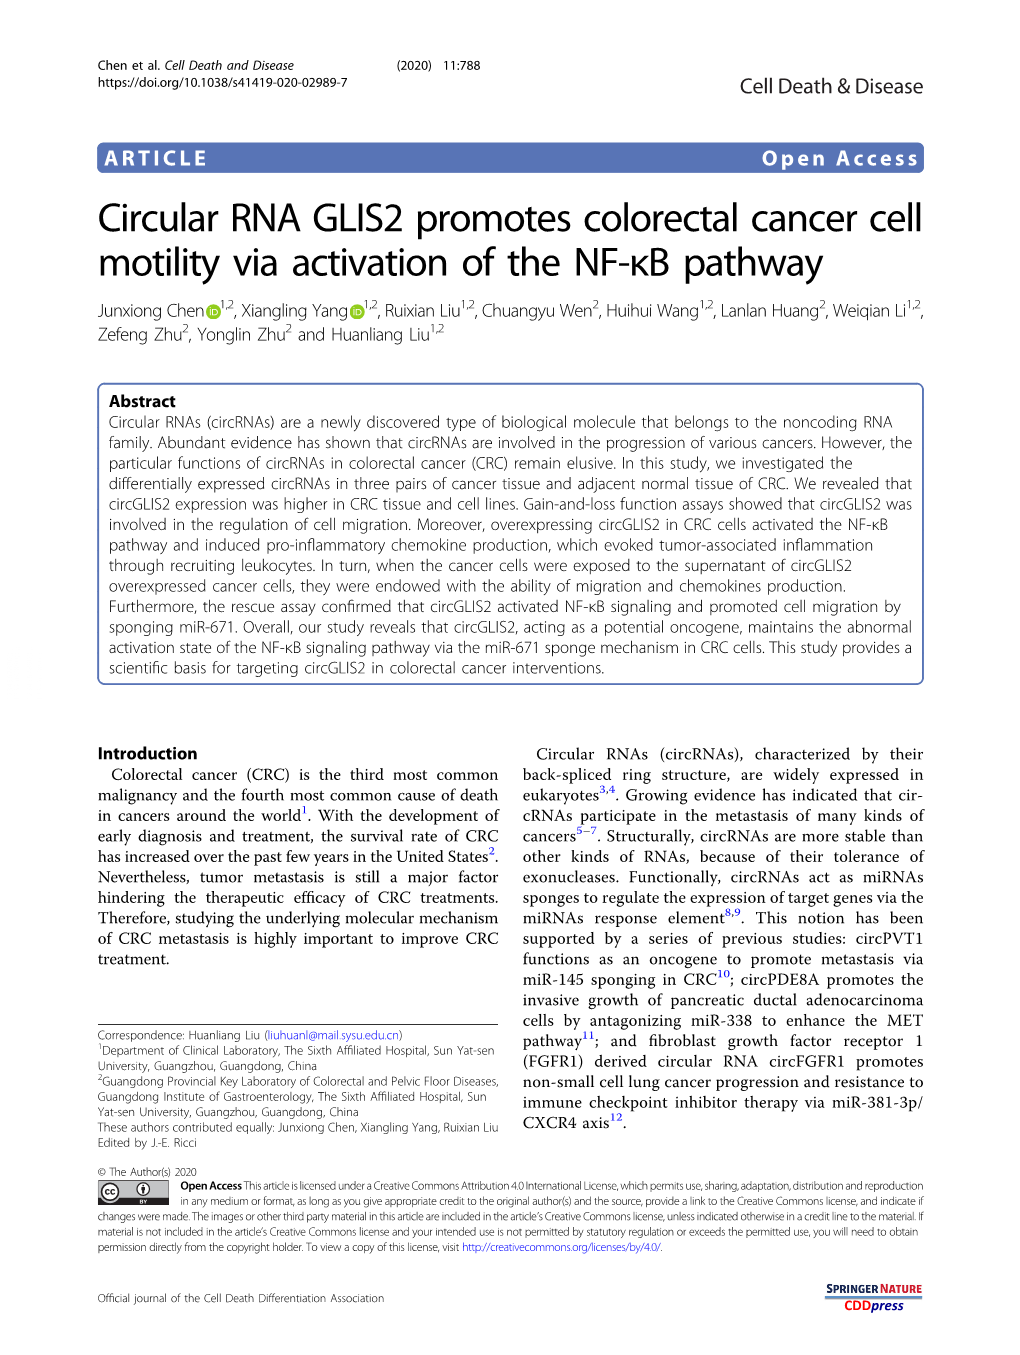 Circular RNA GLIS2 Promotes Colorectal Cancer Cell Motility Via